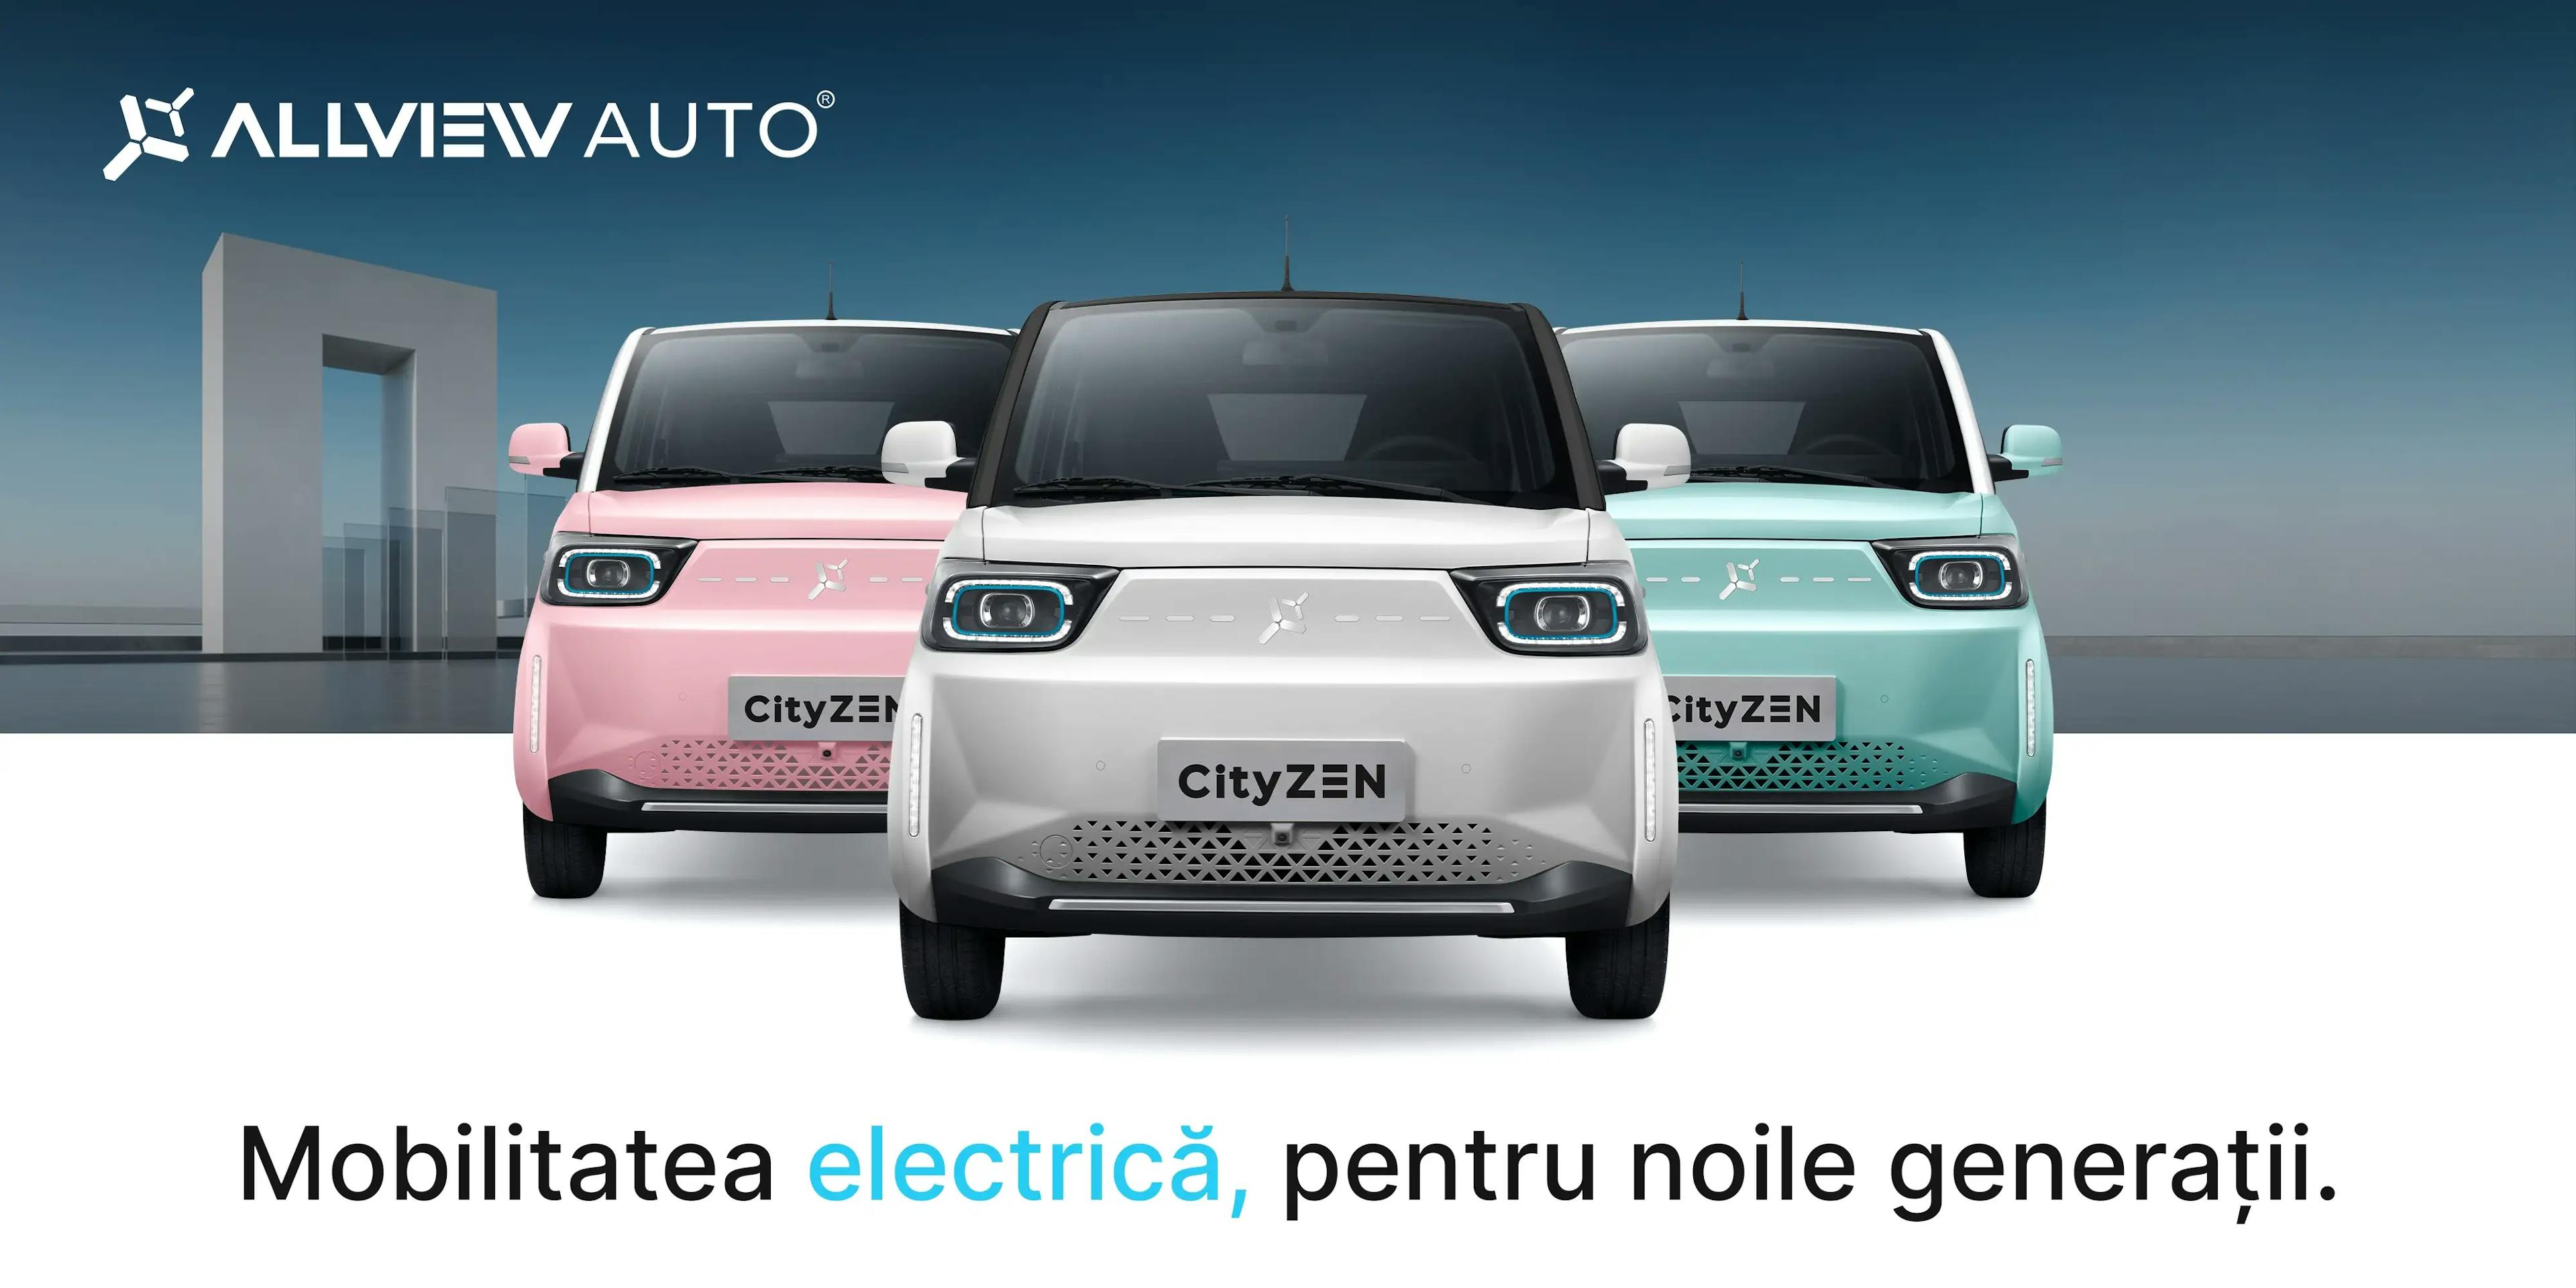 Allview intră oficial pe piața de mașini electrice, cu modelul CityZEN, oferind clienților o experiență electrificată accesibilă